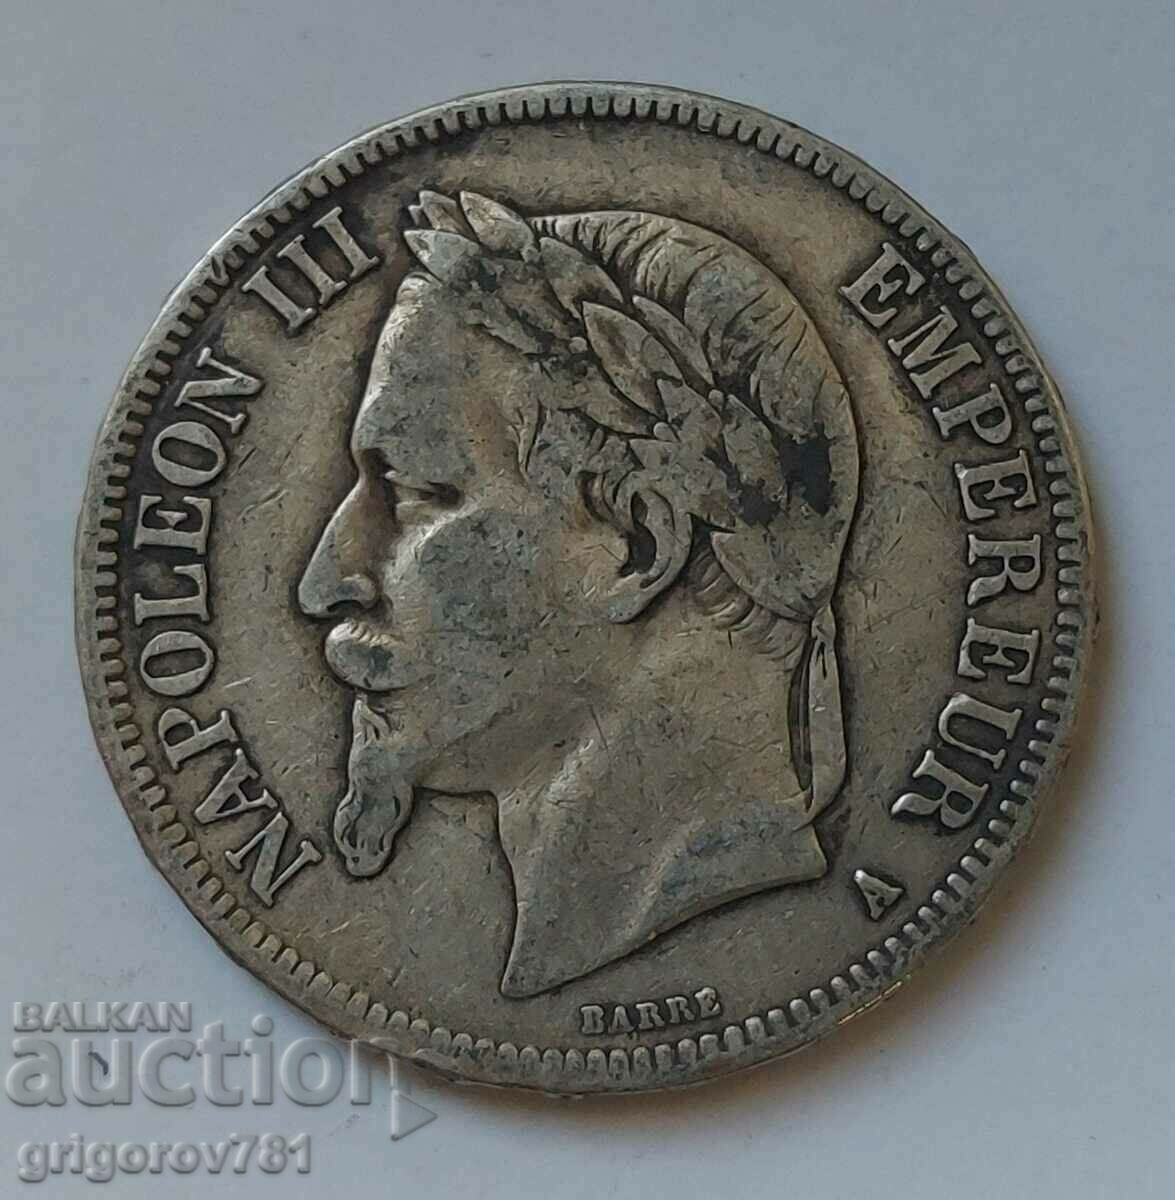 5 Franci Argint Franta 1868 A - Moneda de argint #219